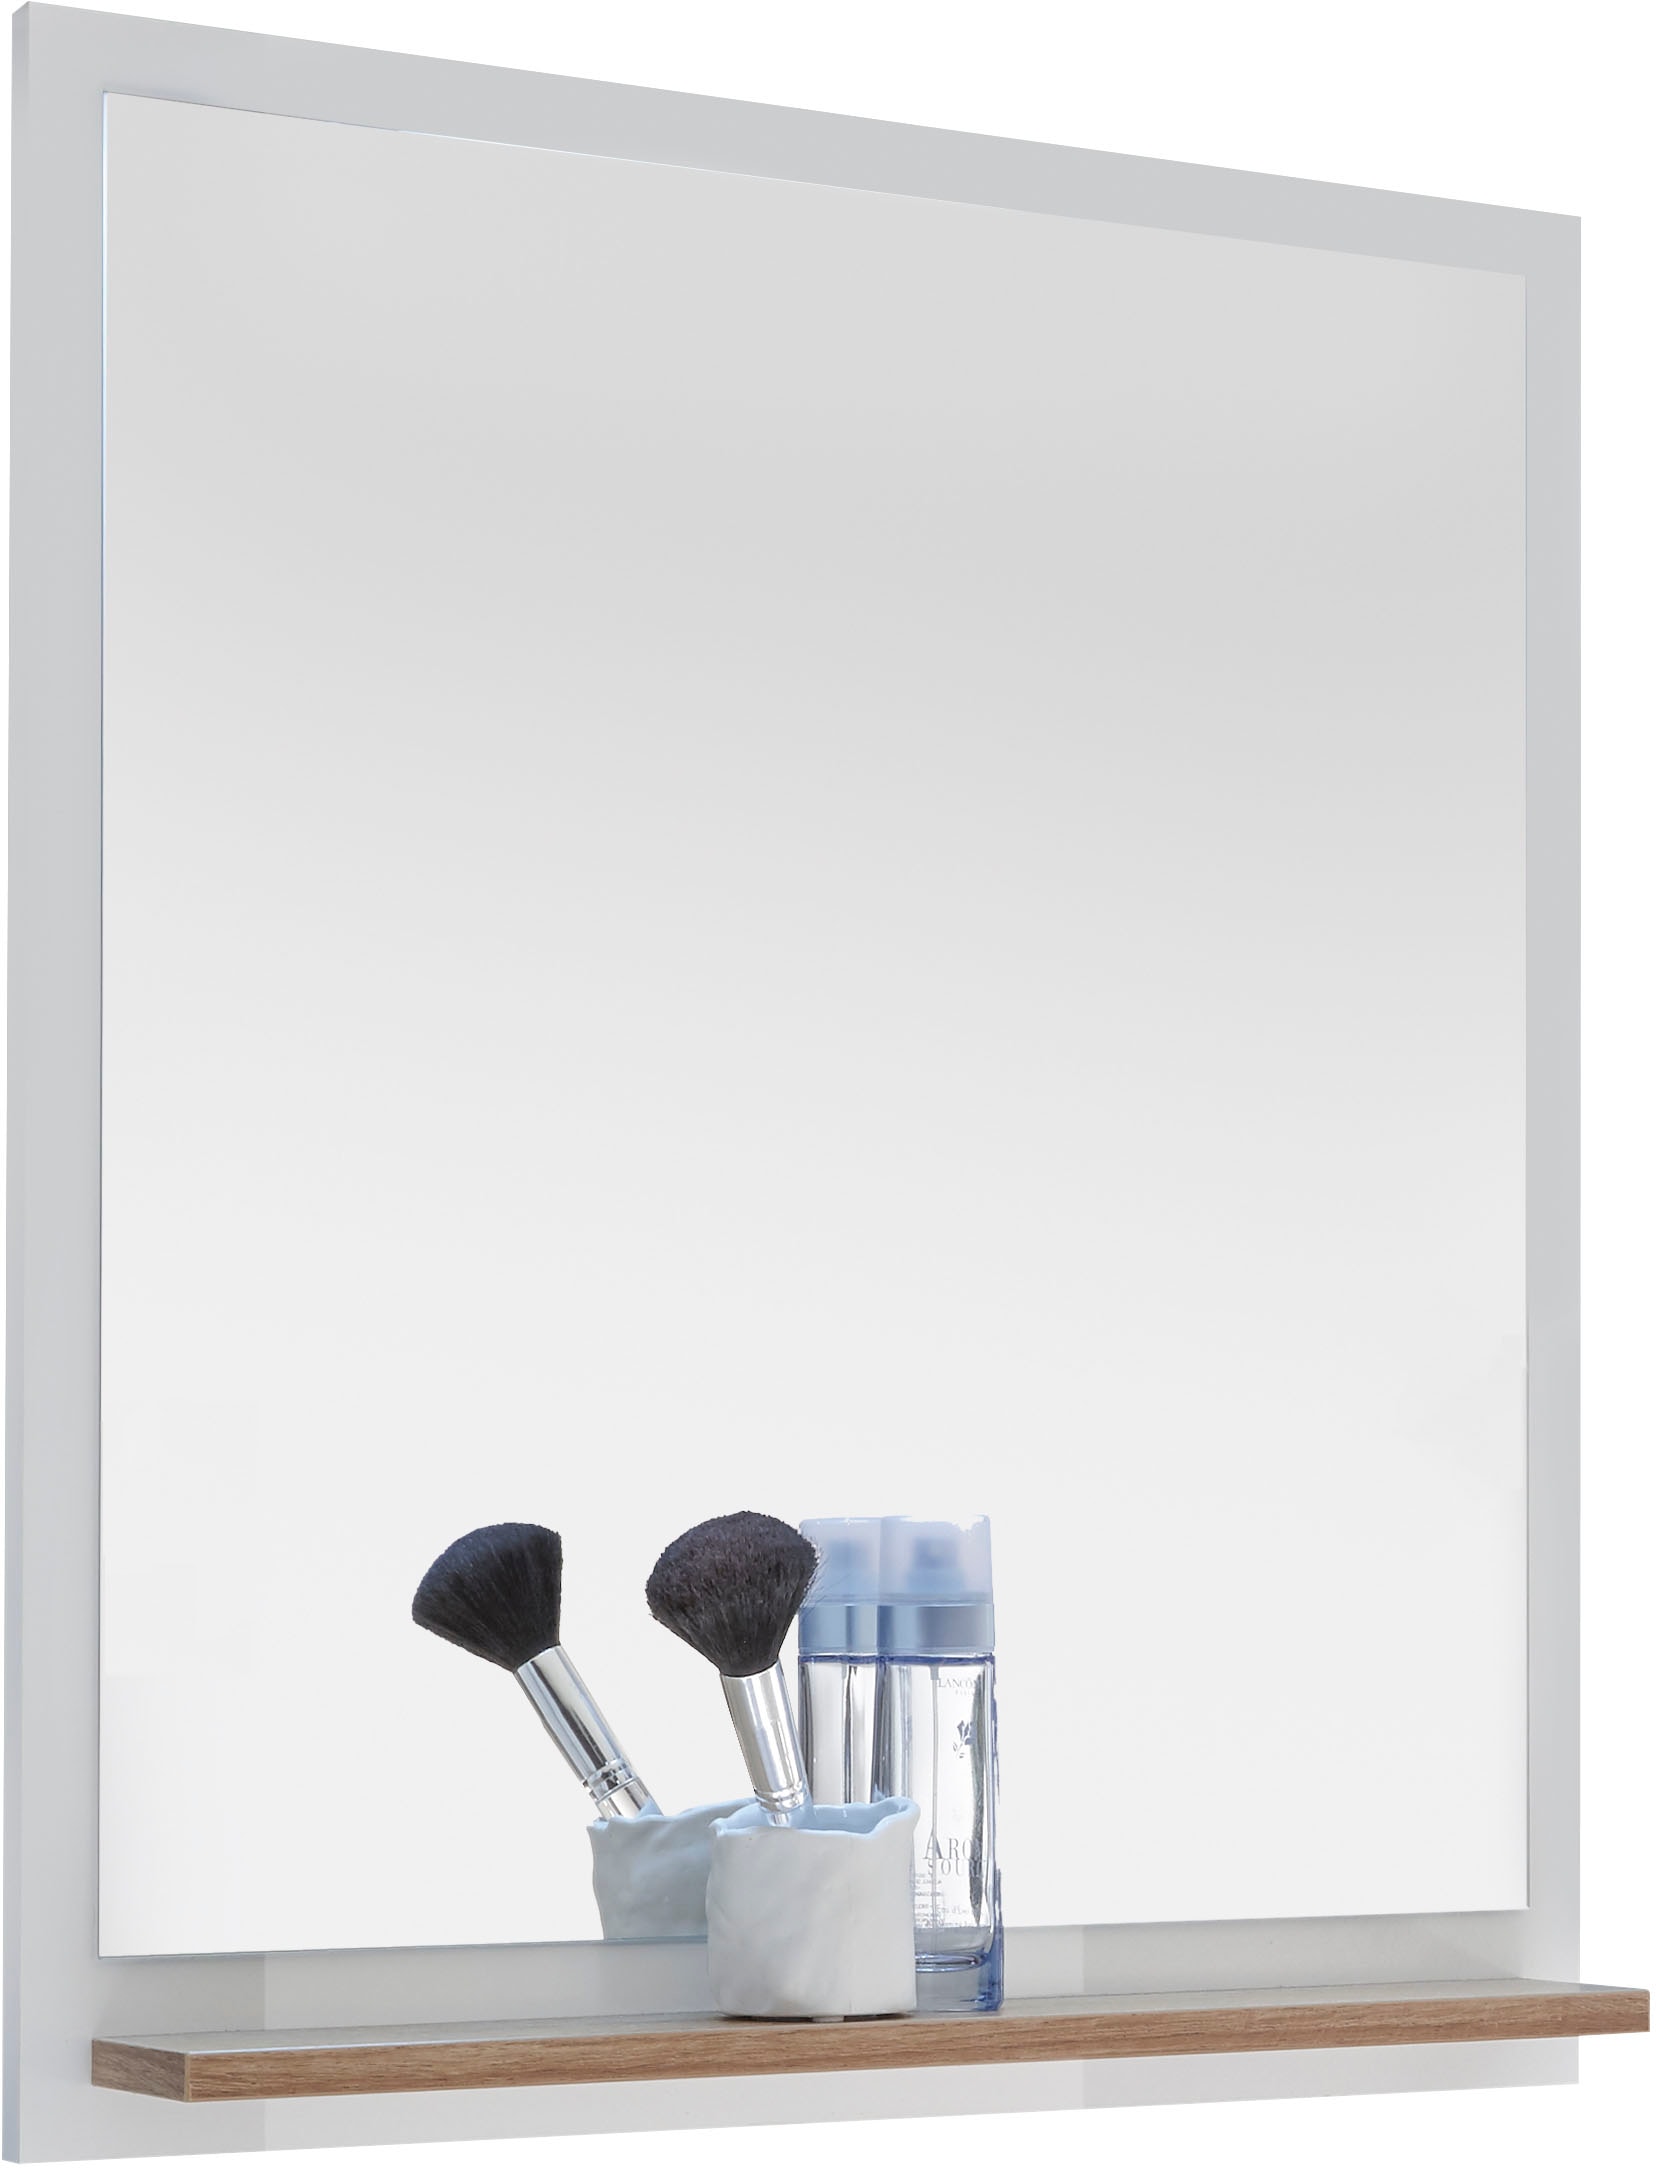 Saphir Badmöbel-Set »Quickset 2-teilig, Mineralmarmor-Waschtisch und LED-Spiegel«, (4 St.), Waschplatz 61 cm breit, 2 Türen, 1 Schublade, Spiegel-Ablage, Bad-Set